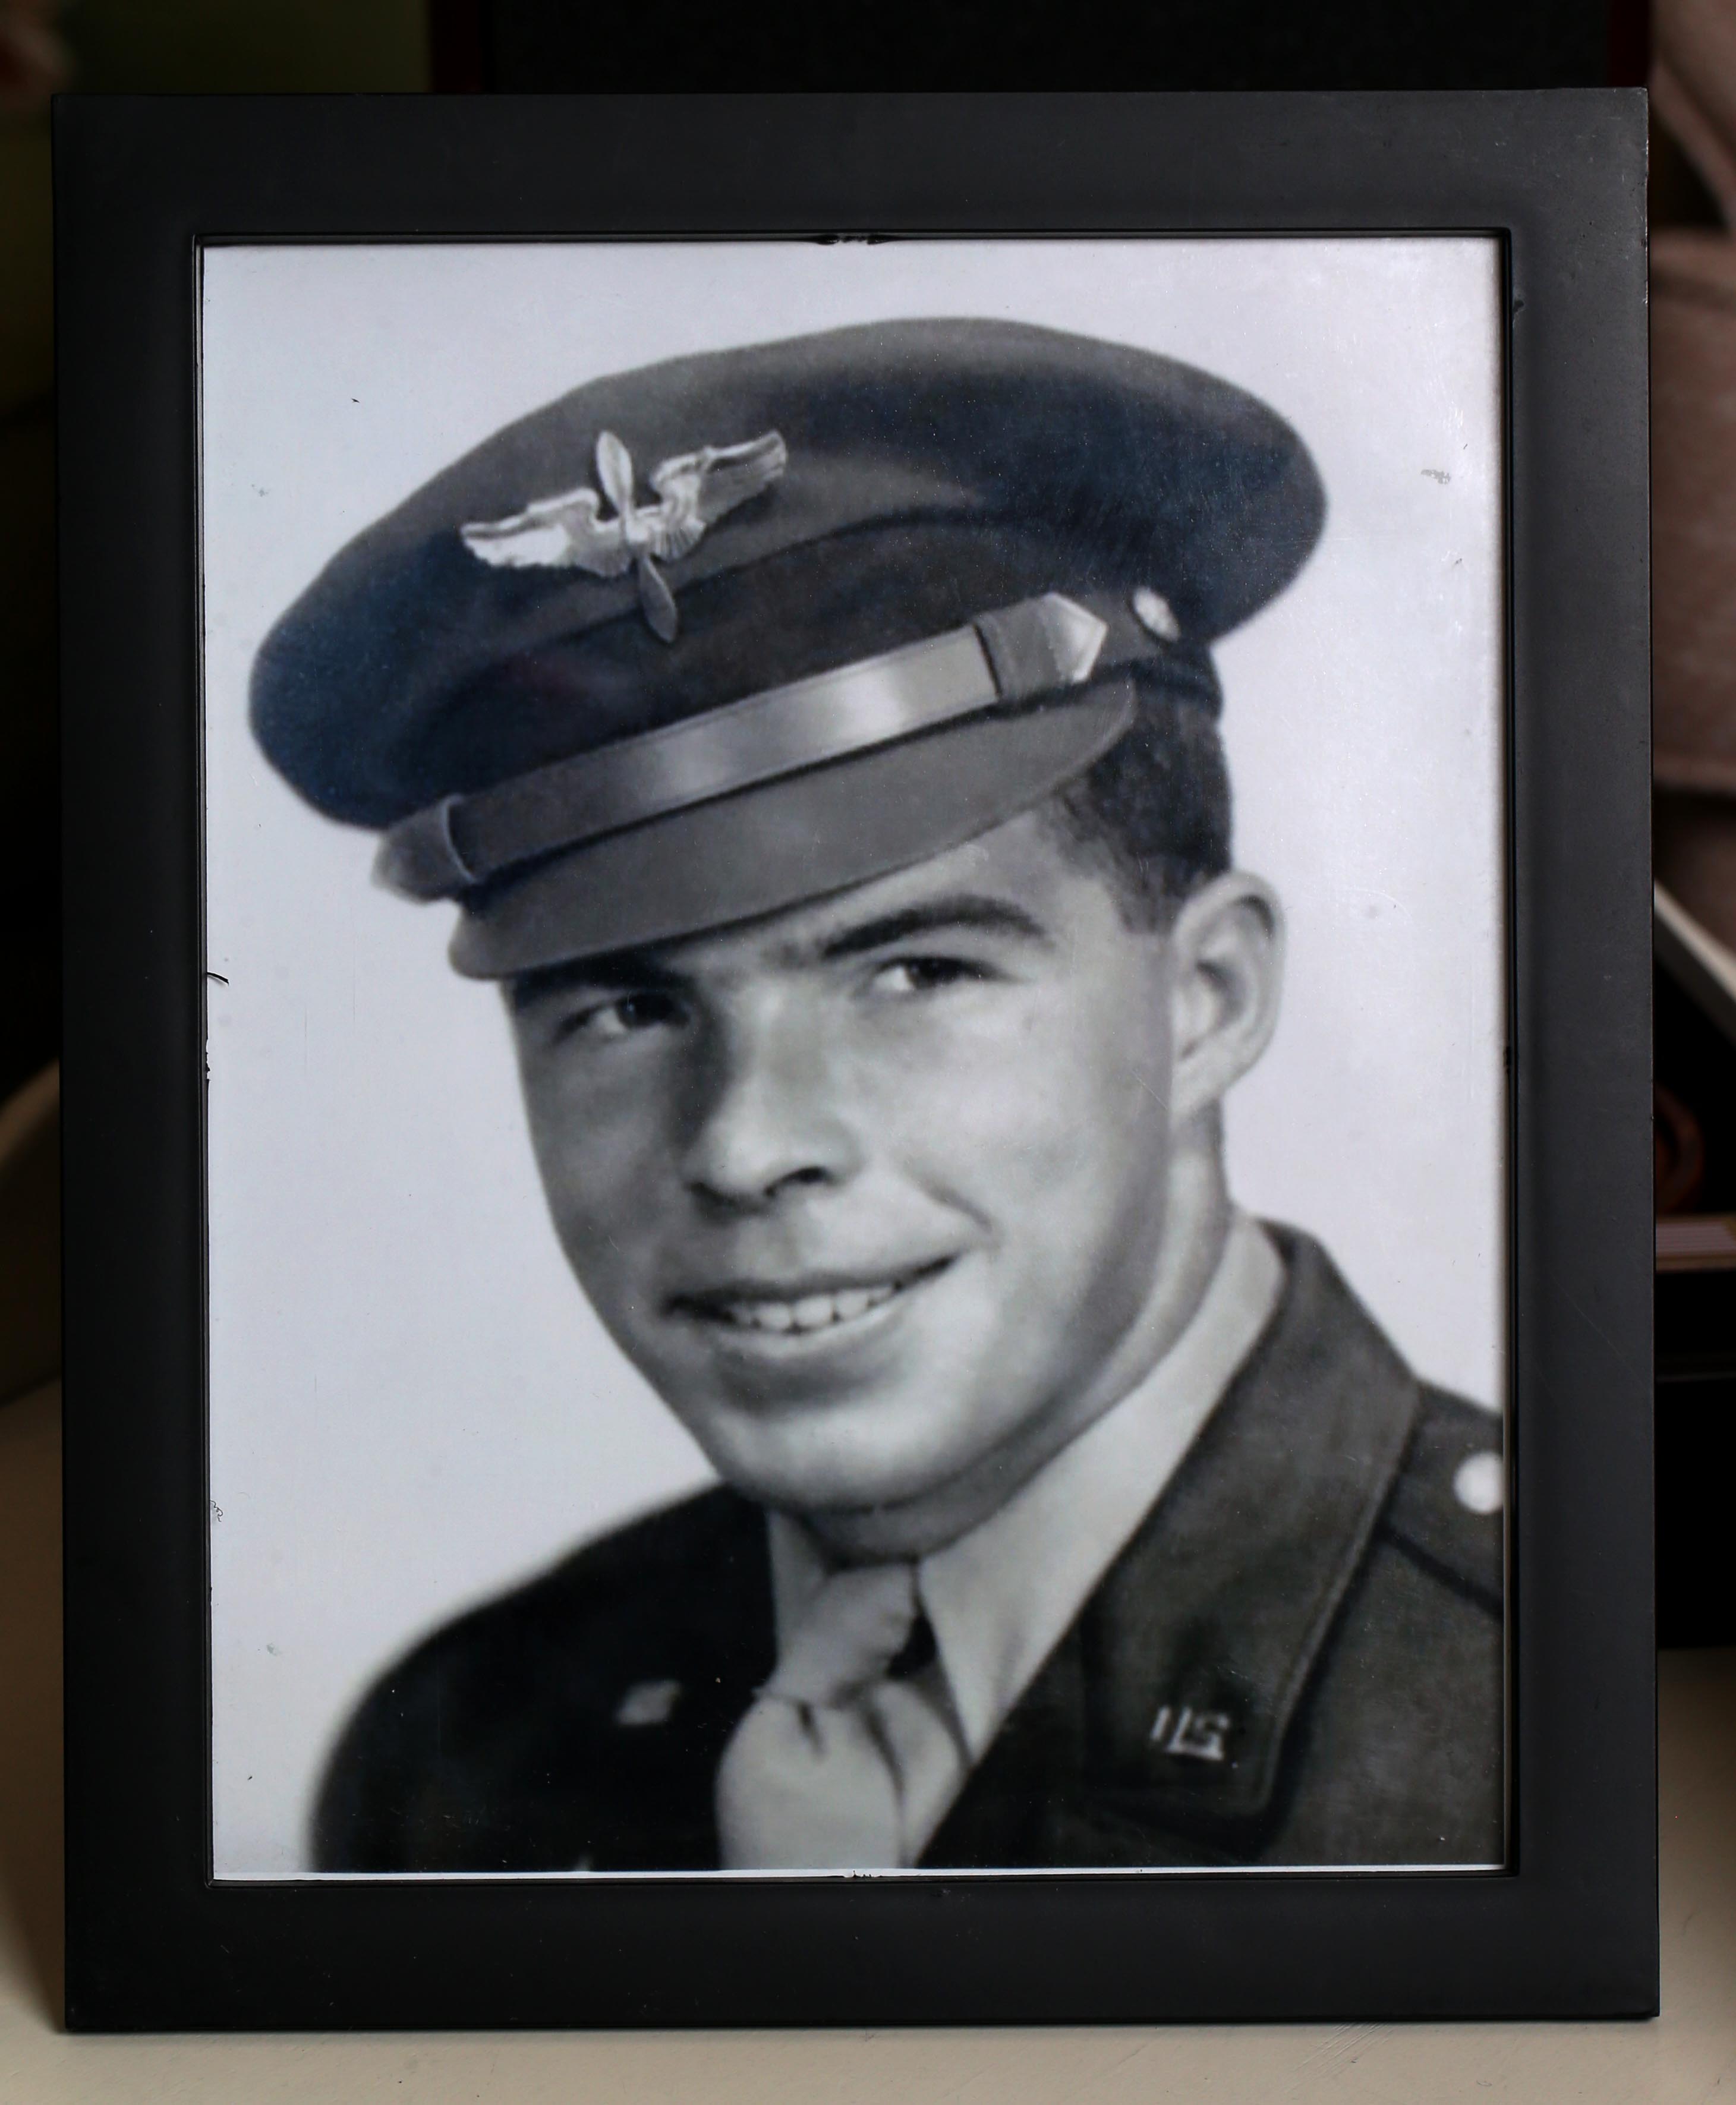 미국 육군의 토마스 J 레드 게이트 중위는 1950 년 한국 전쟁 중에 전투에서 살해되었을 때 24 세였다. 그는 결국 뼈에서 9 월 17 일에 휴식 할 수있게되었습니다.